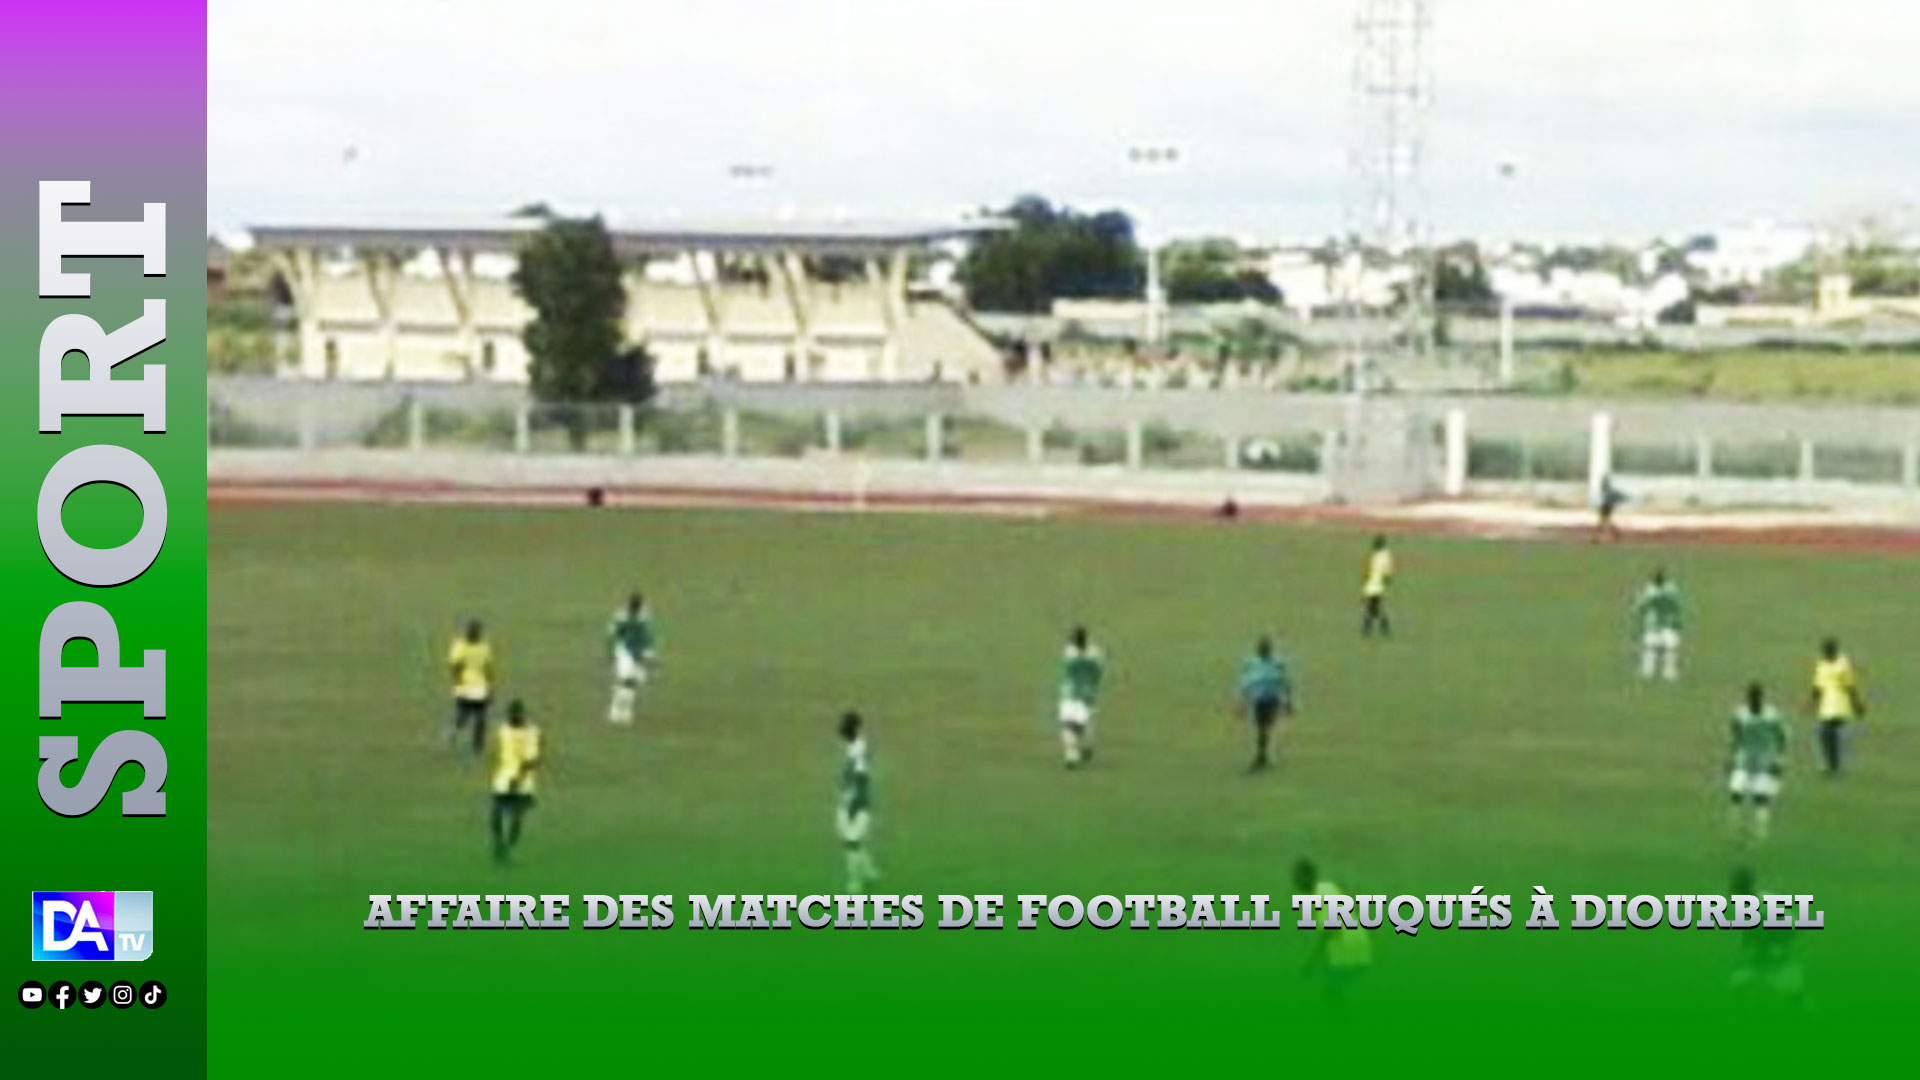 Affaire des matches de football truqués à Diourbel : De lourdes sanctionnés infligées aux dirigeants et aux joueurs…